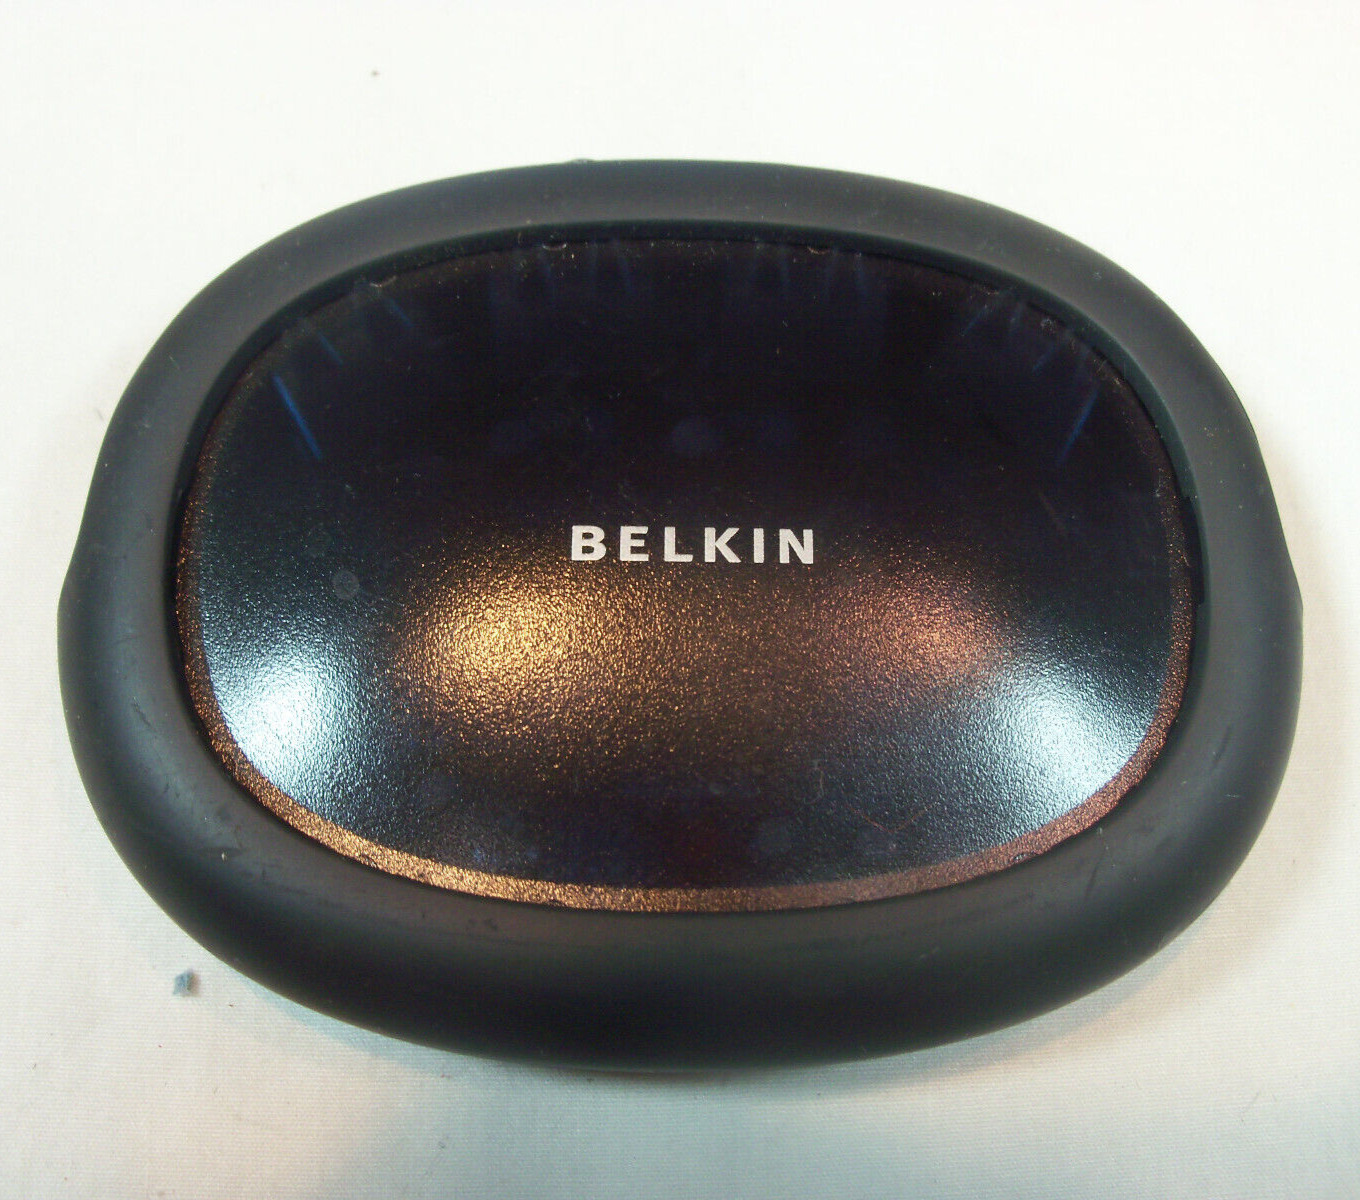 Belkin Powered Hi-Speed USB 2.0 (F5U234) 4-Ports External Hub